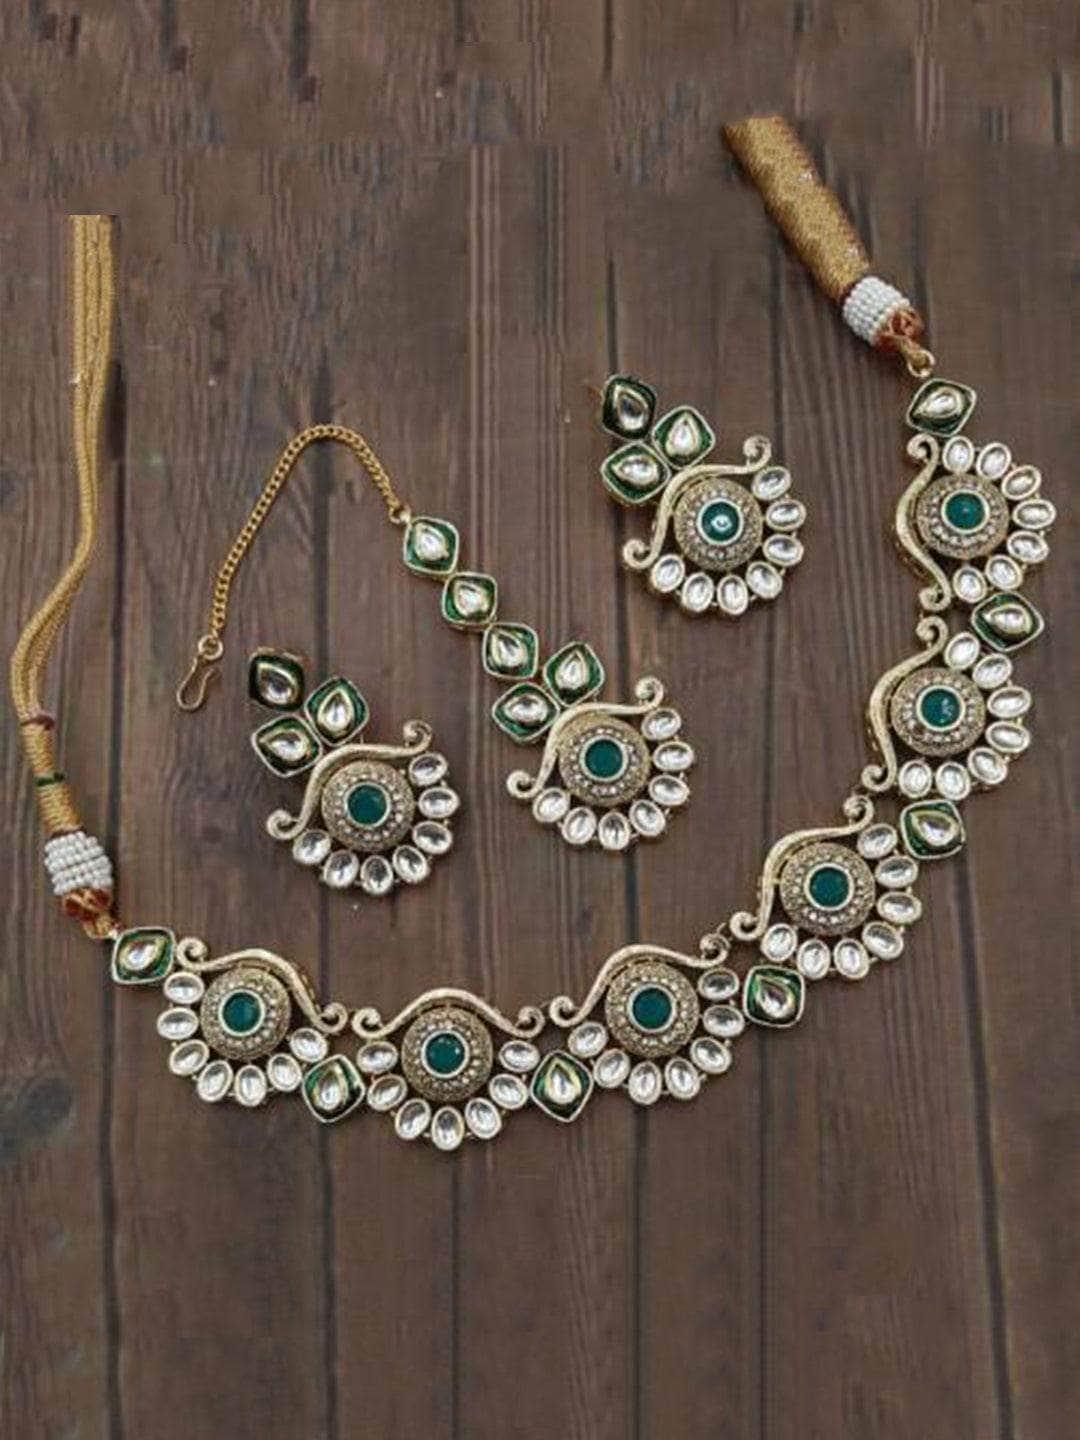 Ishhaara Antique Kundan Design Necklace Earring And Teeka Set